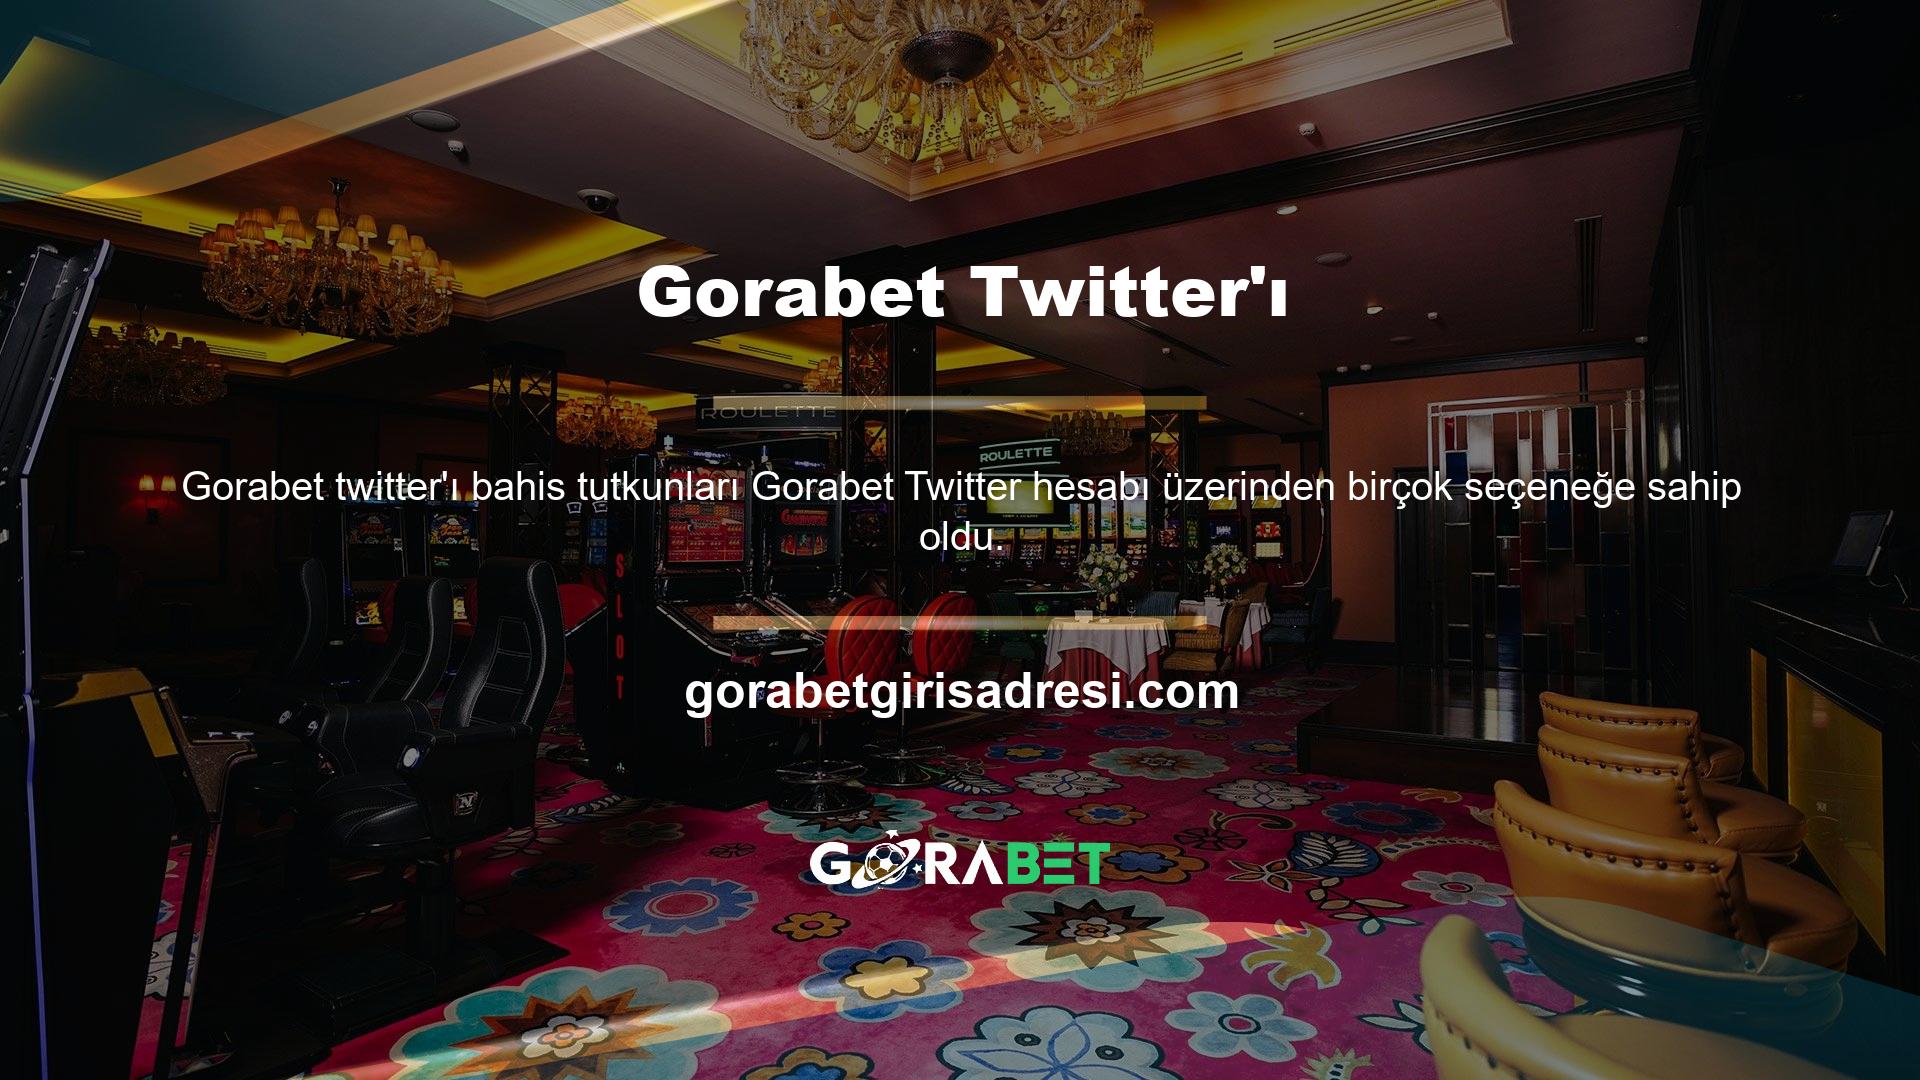 Gorabet, spor ve casino bahis tutkunlarına Türkçe hizmet veren bir web sitesidir